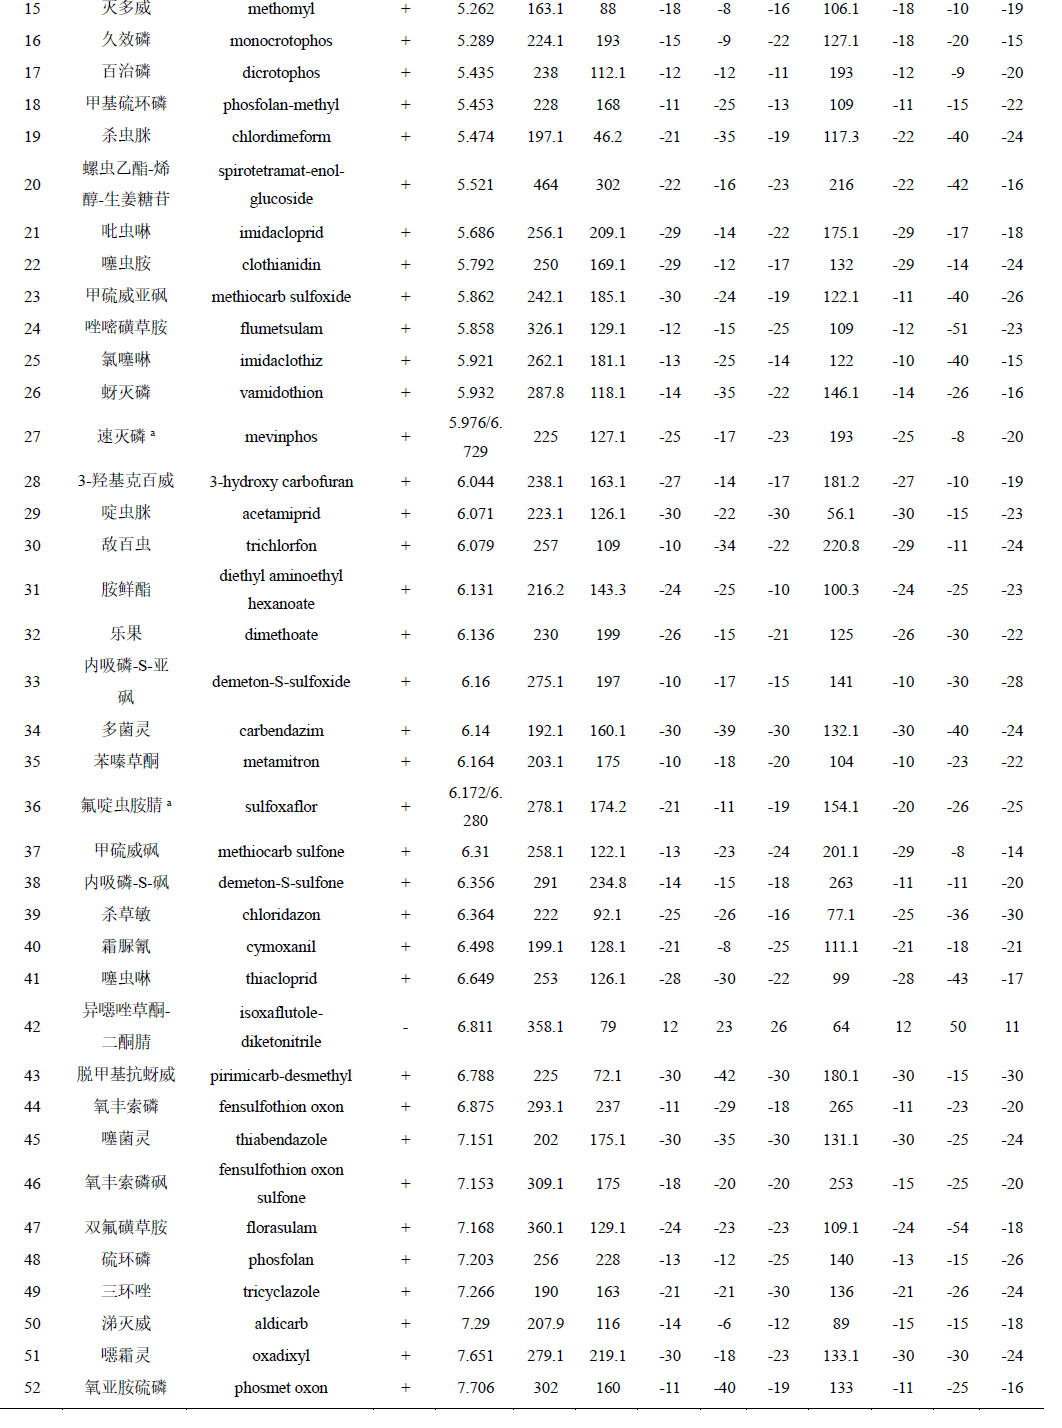 生姜中331种农药及其代谢物残留量的测定